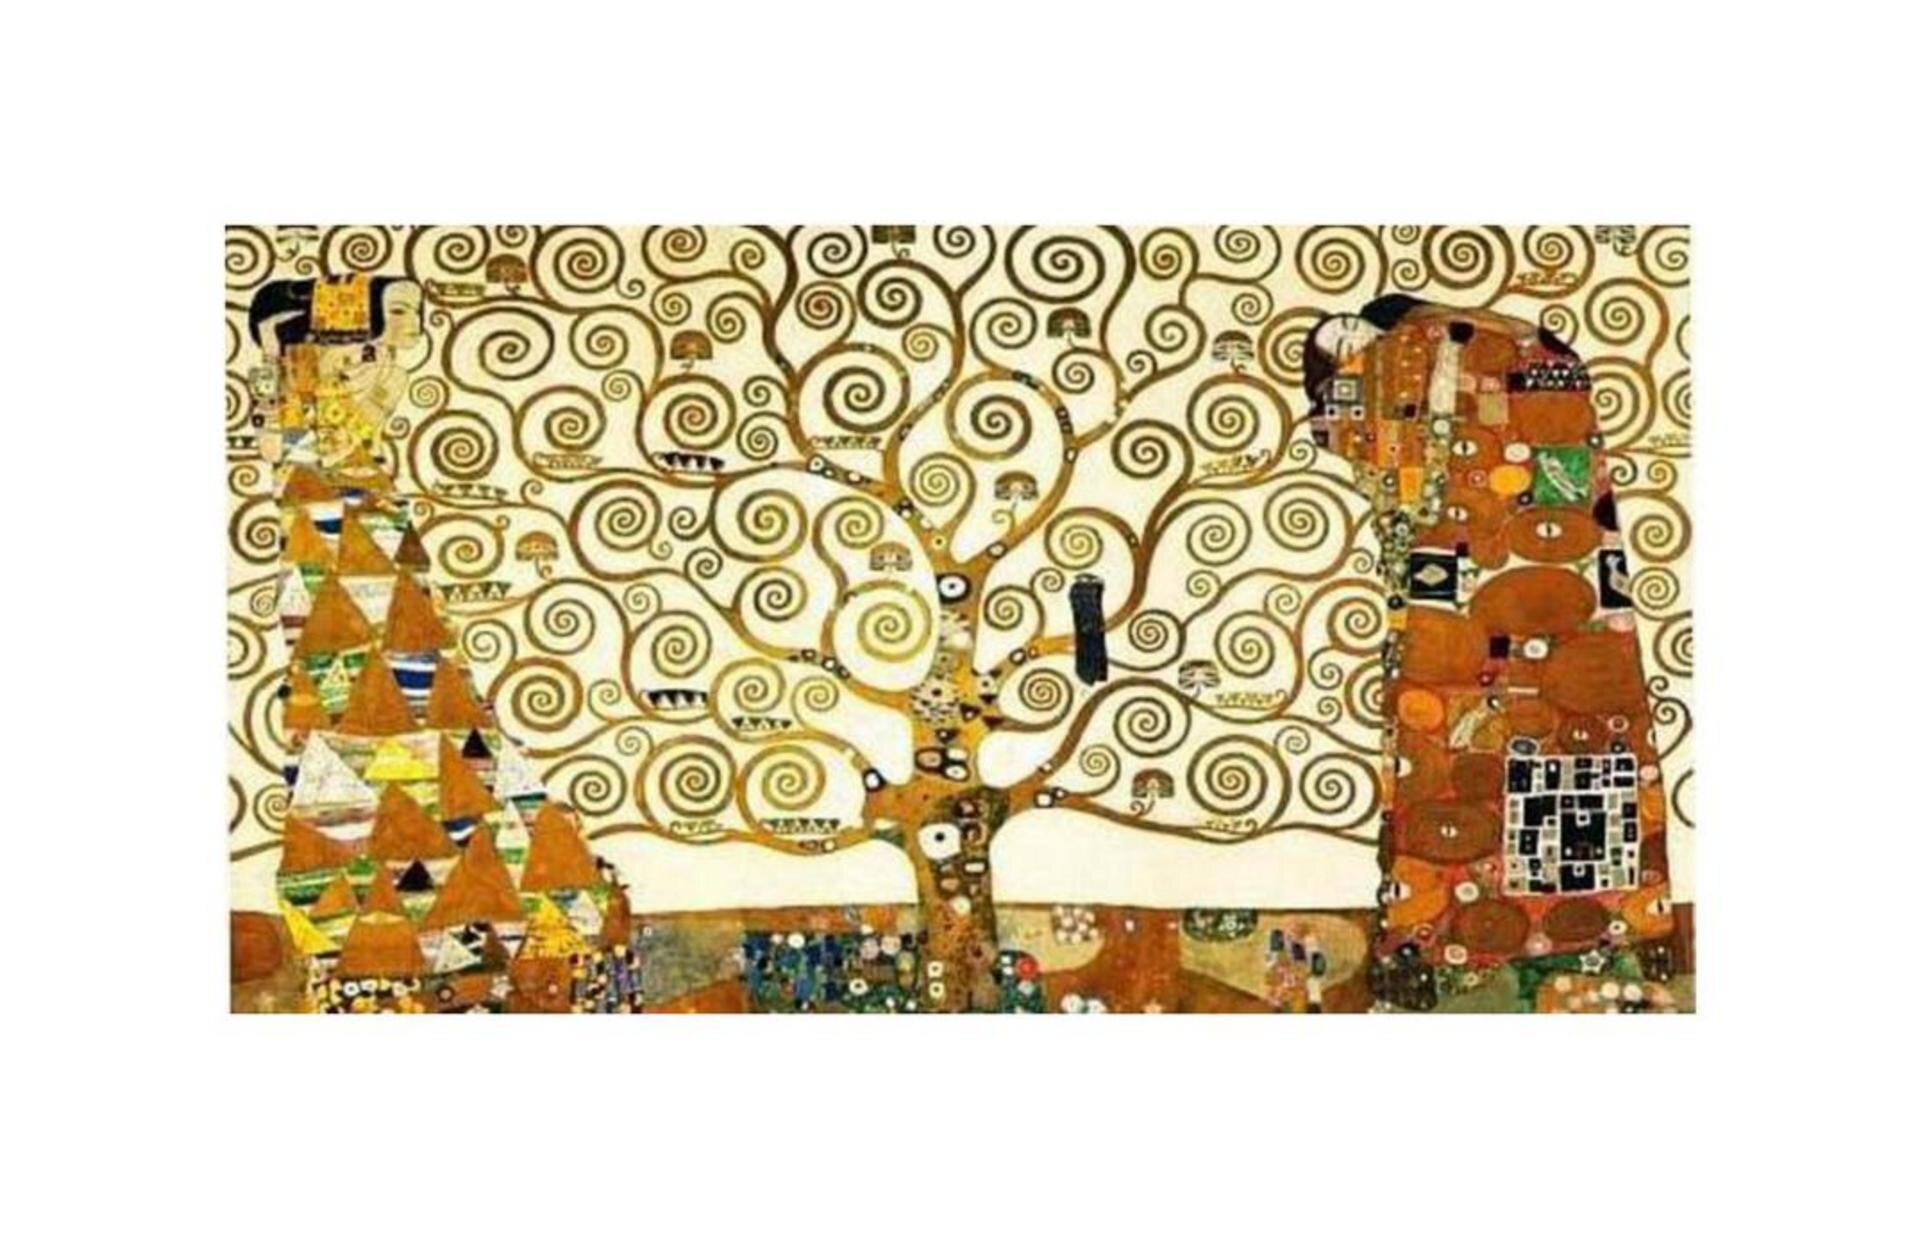 Połącz elementy dotyczące poniższego dzieła Klimta oraz przeanalizuj je pod względem dzieła totalnego i syntezy sztuk: